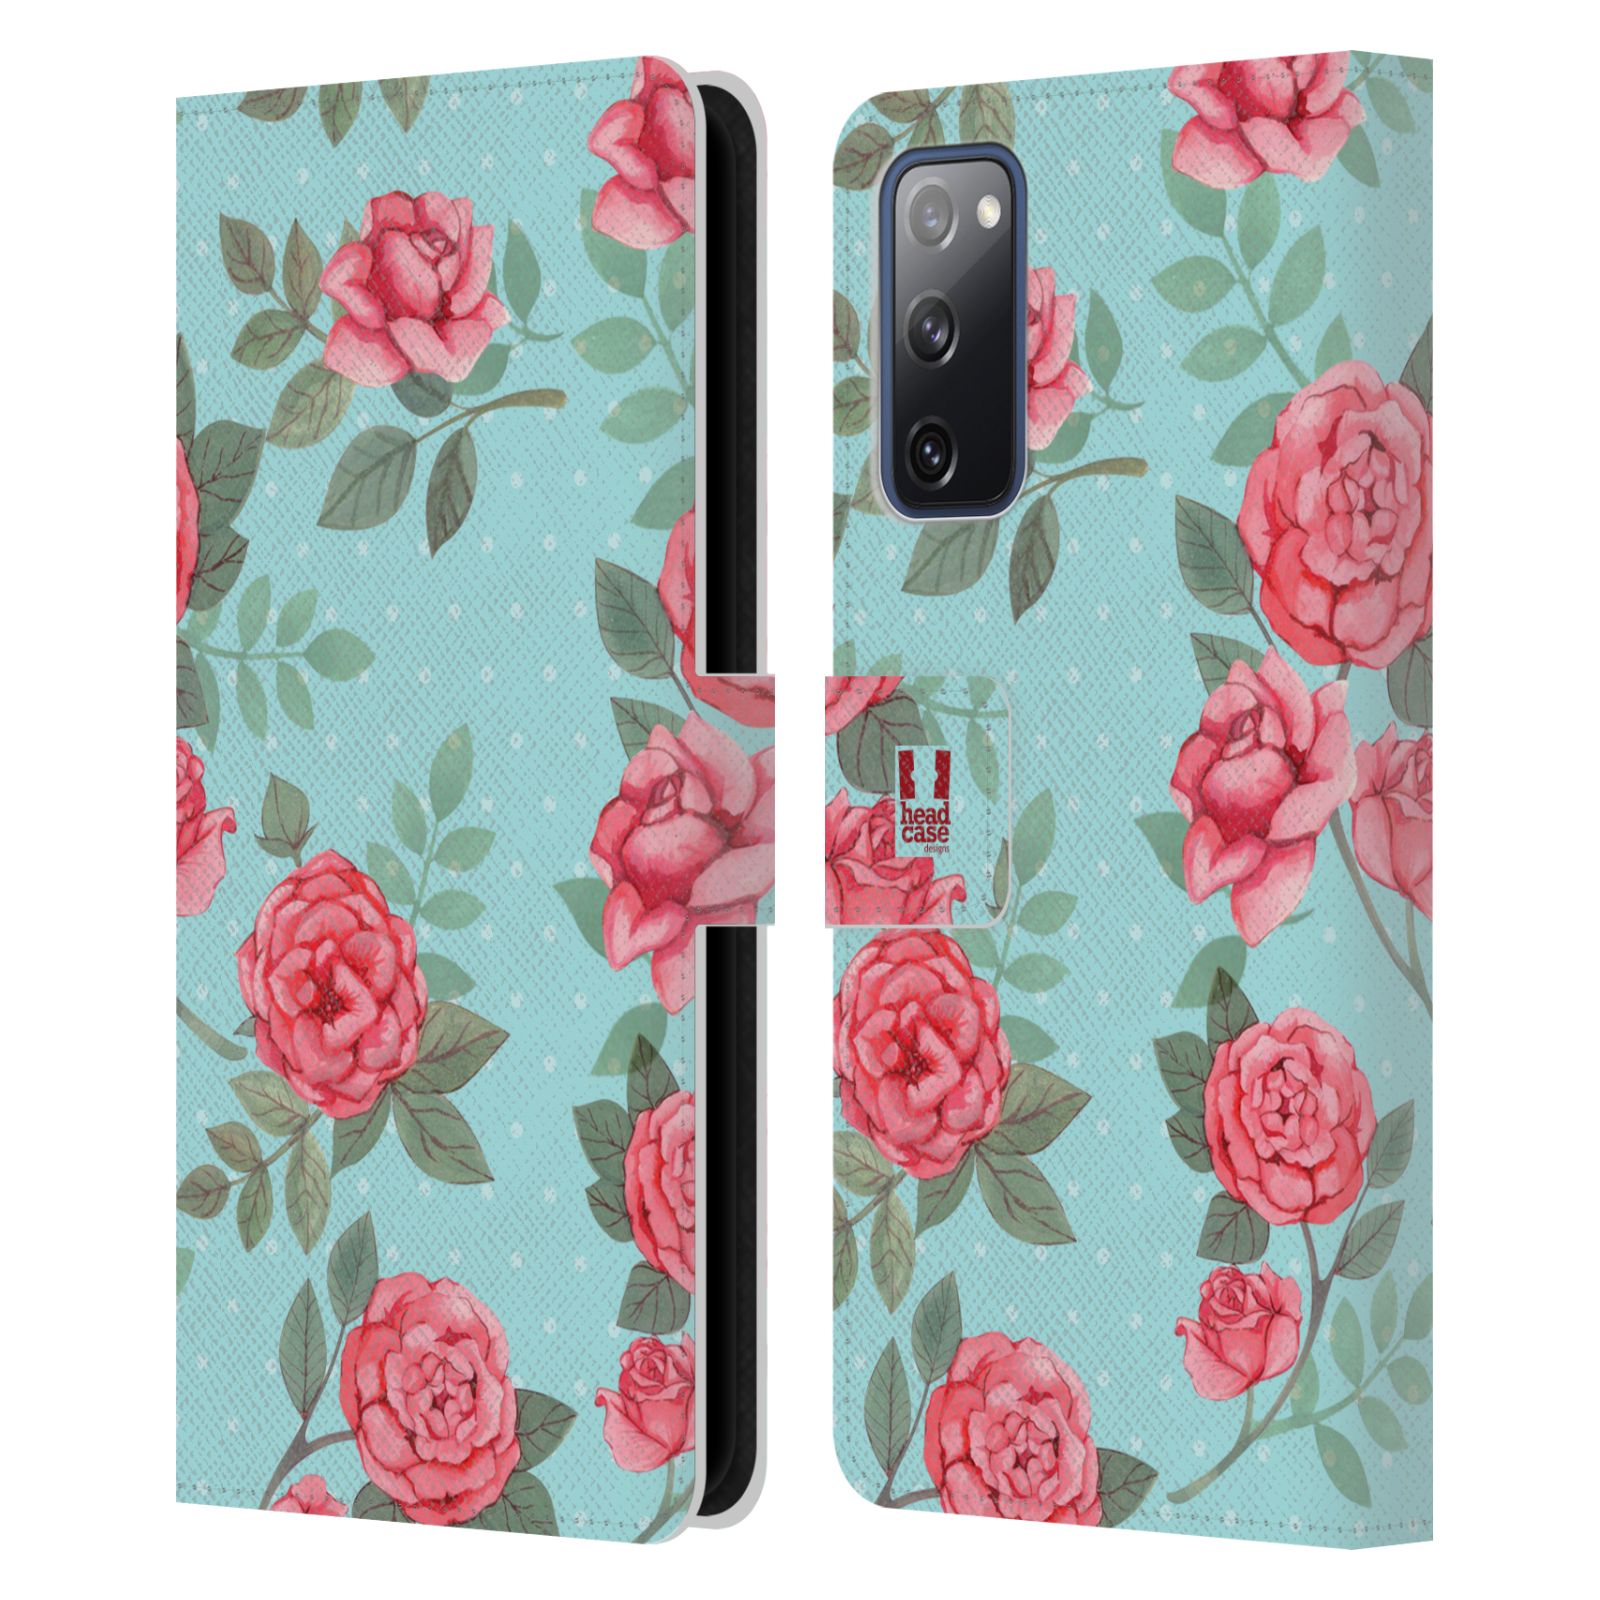 Pouzdro HEAD CASE na mobil Samsung Galaxy S20 FE / S20 FE 5G romantické květy velké růže modrá a růžová